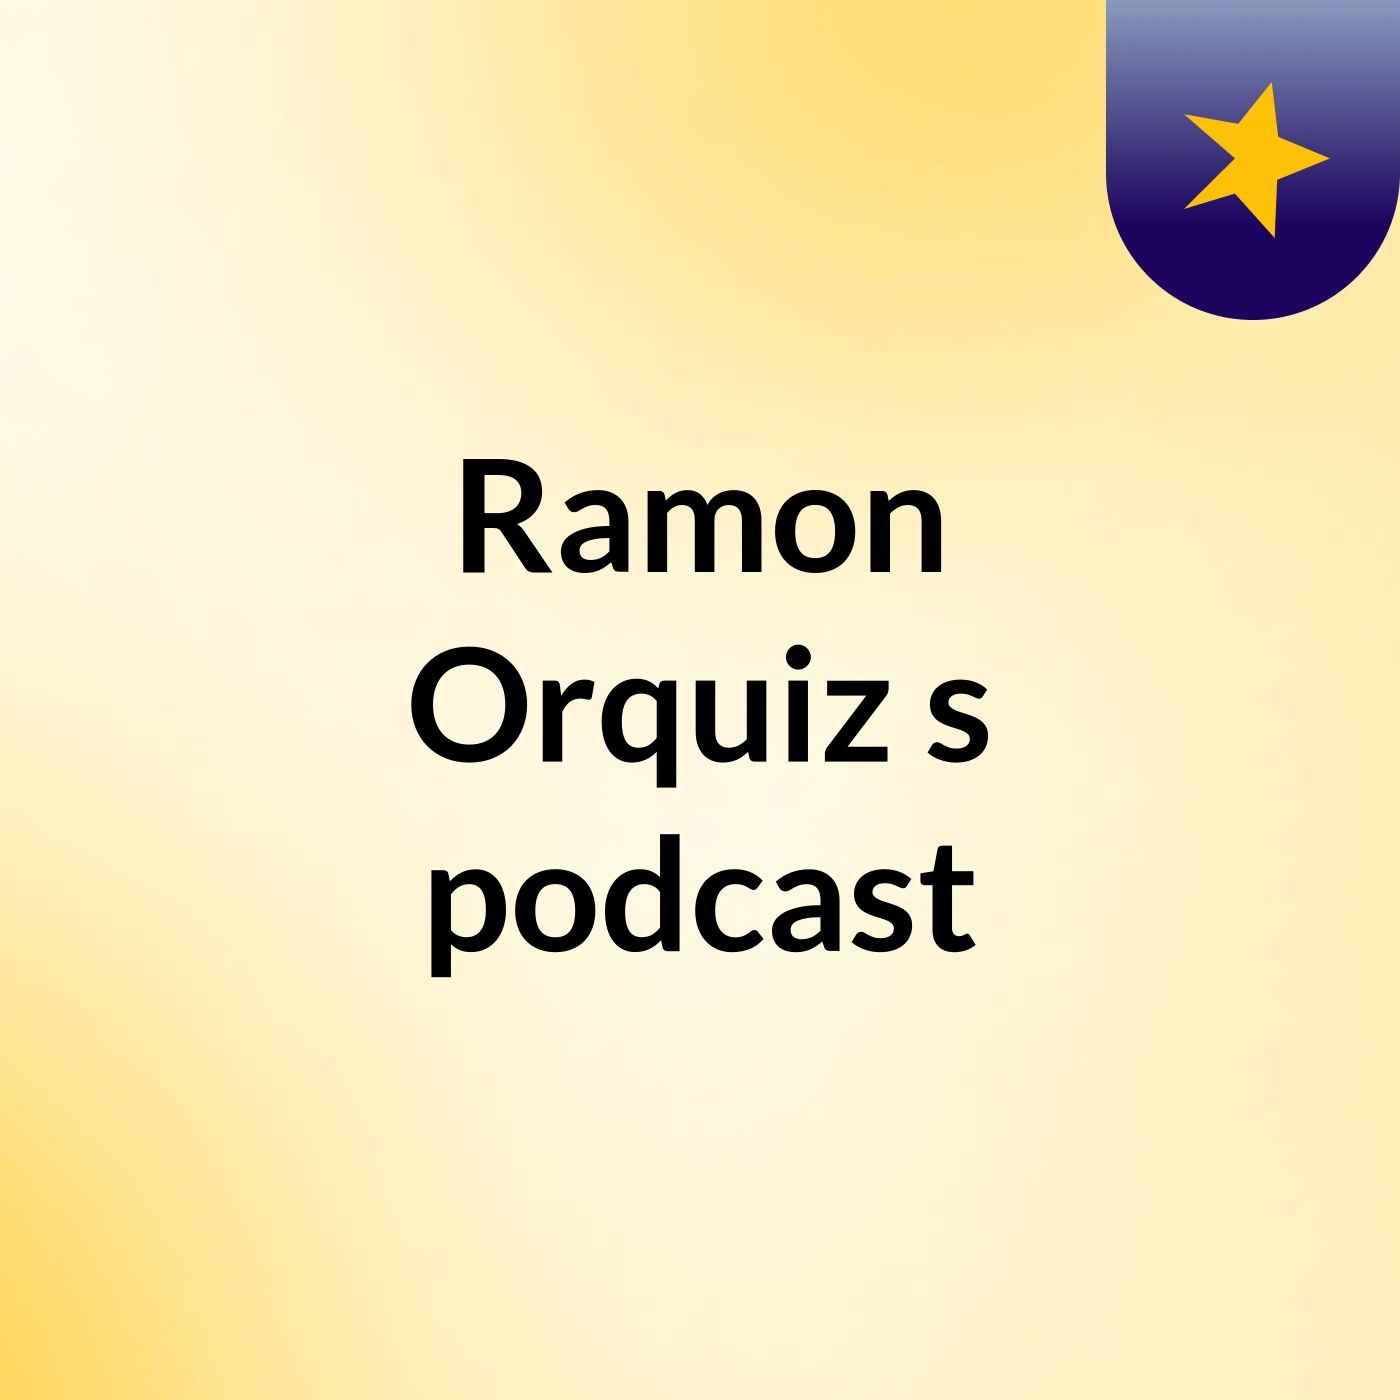 Ramon Orquiz's podcast